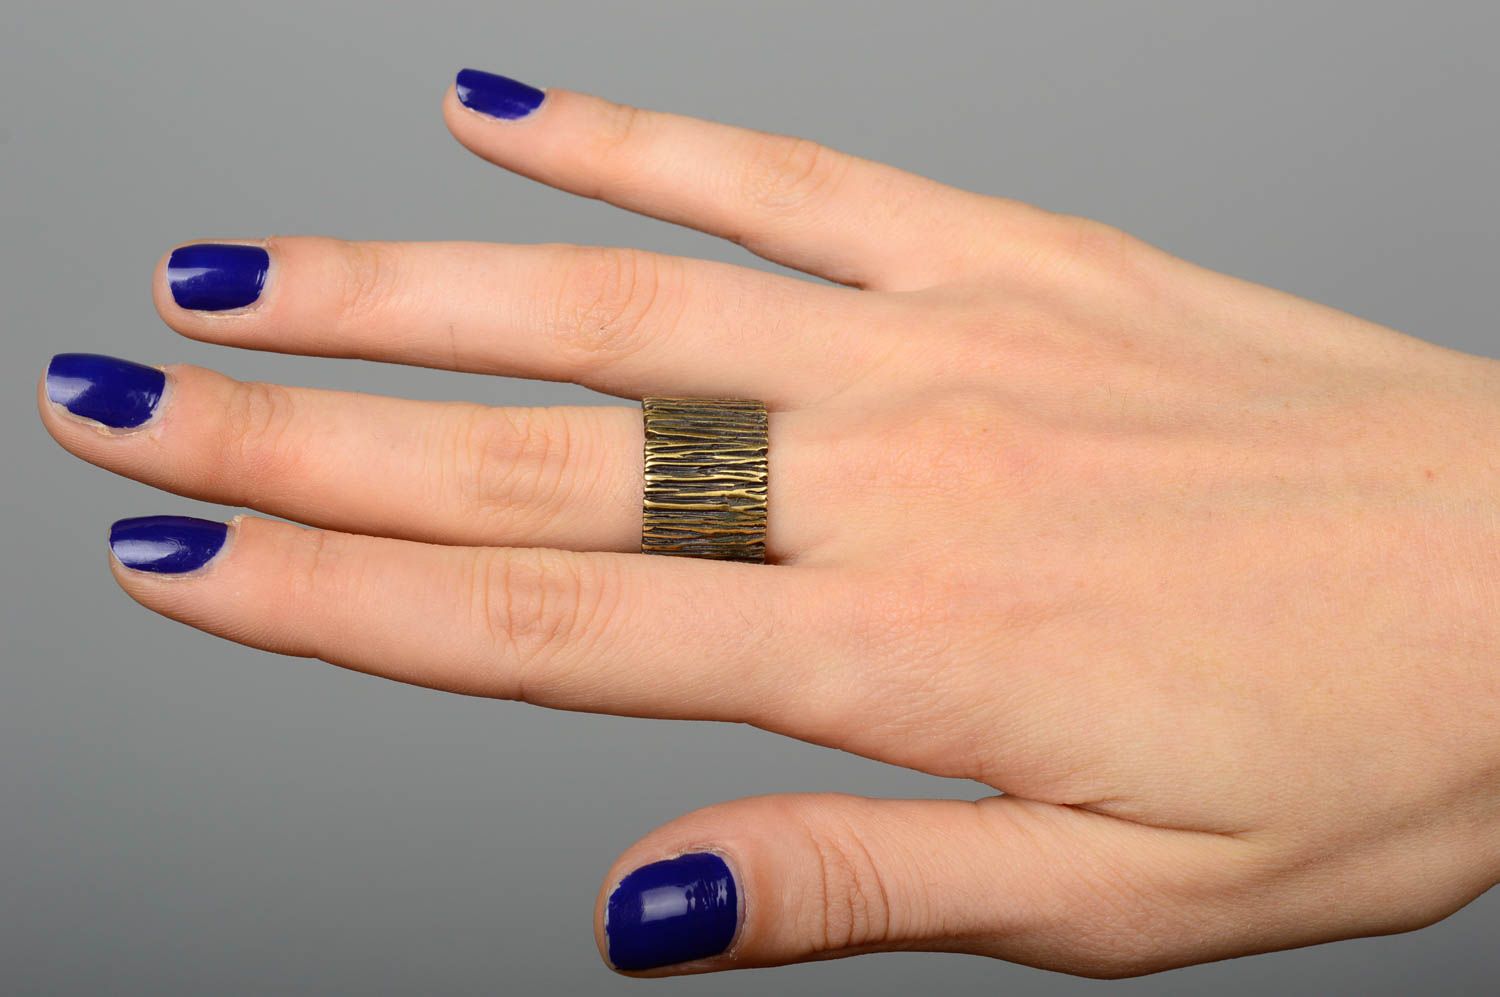 Кольцо ручной работы модное кольцо широкое оригинальное кольцо из бронзы фото 2